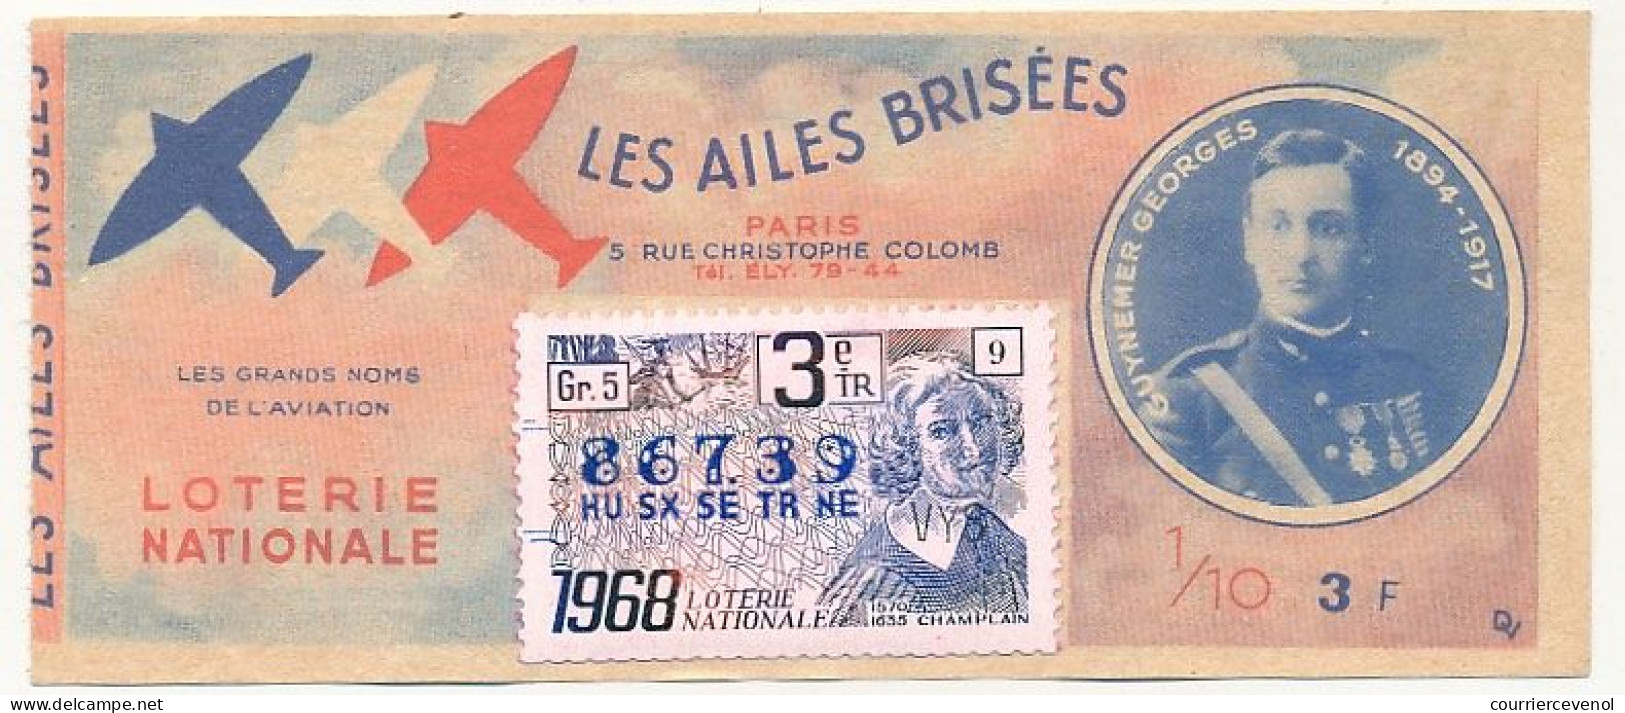 FRANCE - Loterie Nationale - 1/10ème - Les Ailes Brisées - Grands Noms De L'Aviation - Guynemer Georges - 3èm Tr 1968 - Billets De Loterie